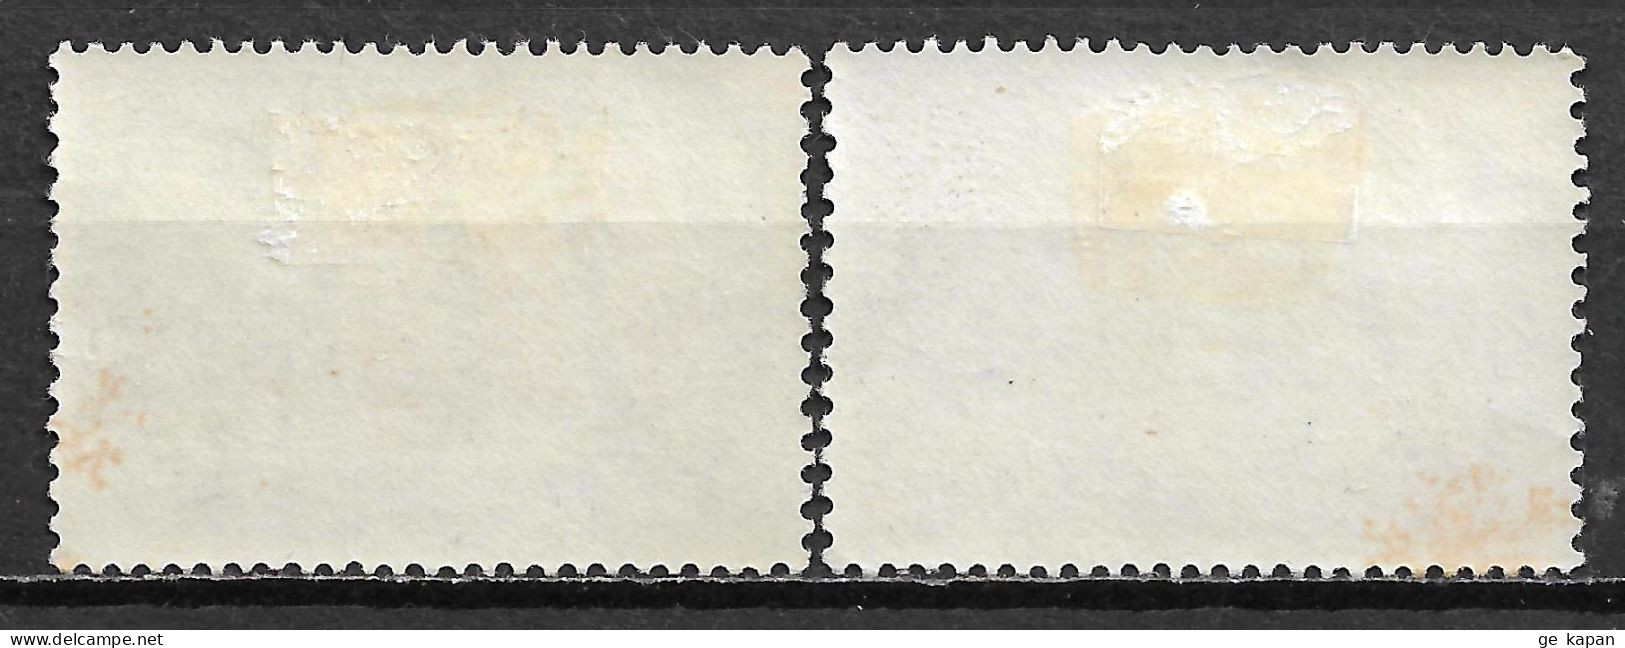 1963 NETHERLANDS Complete Set Of 2 MVLH STAMPS (Michel # 791,792) CV €1.50 - Unused Stamps